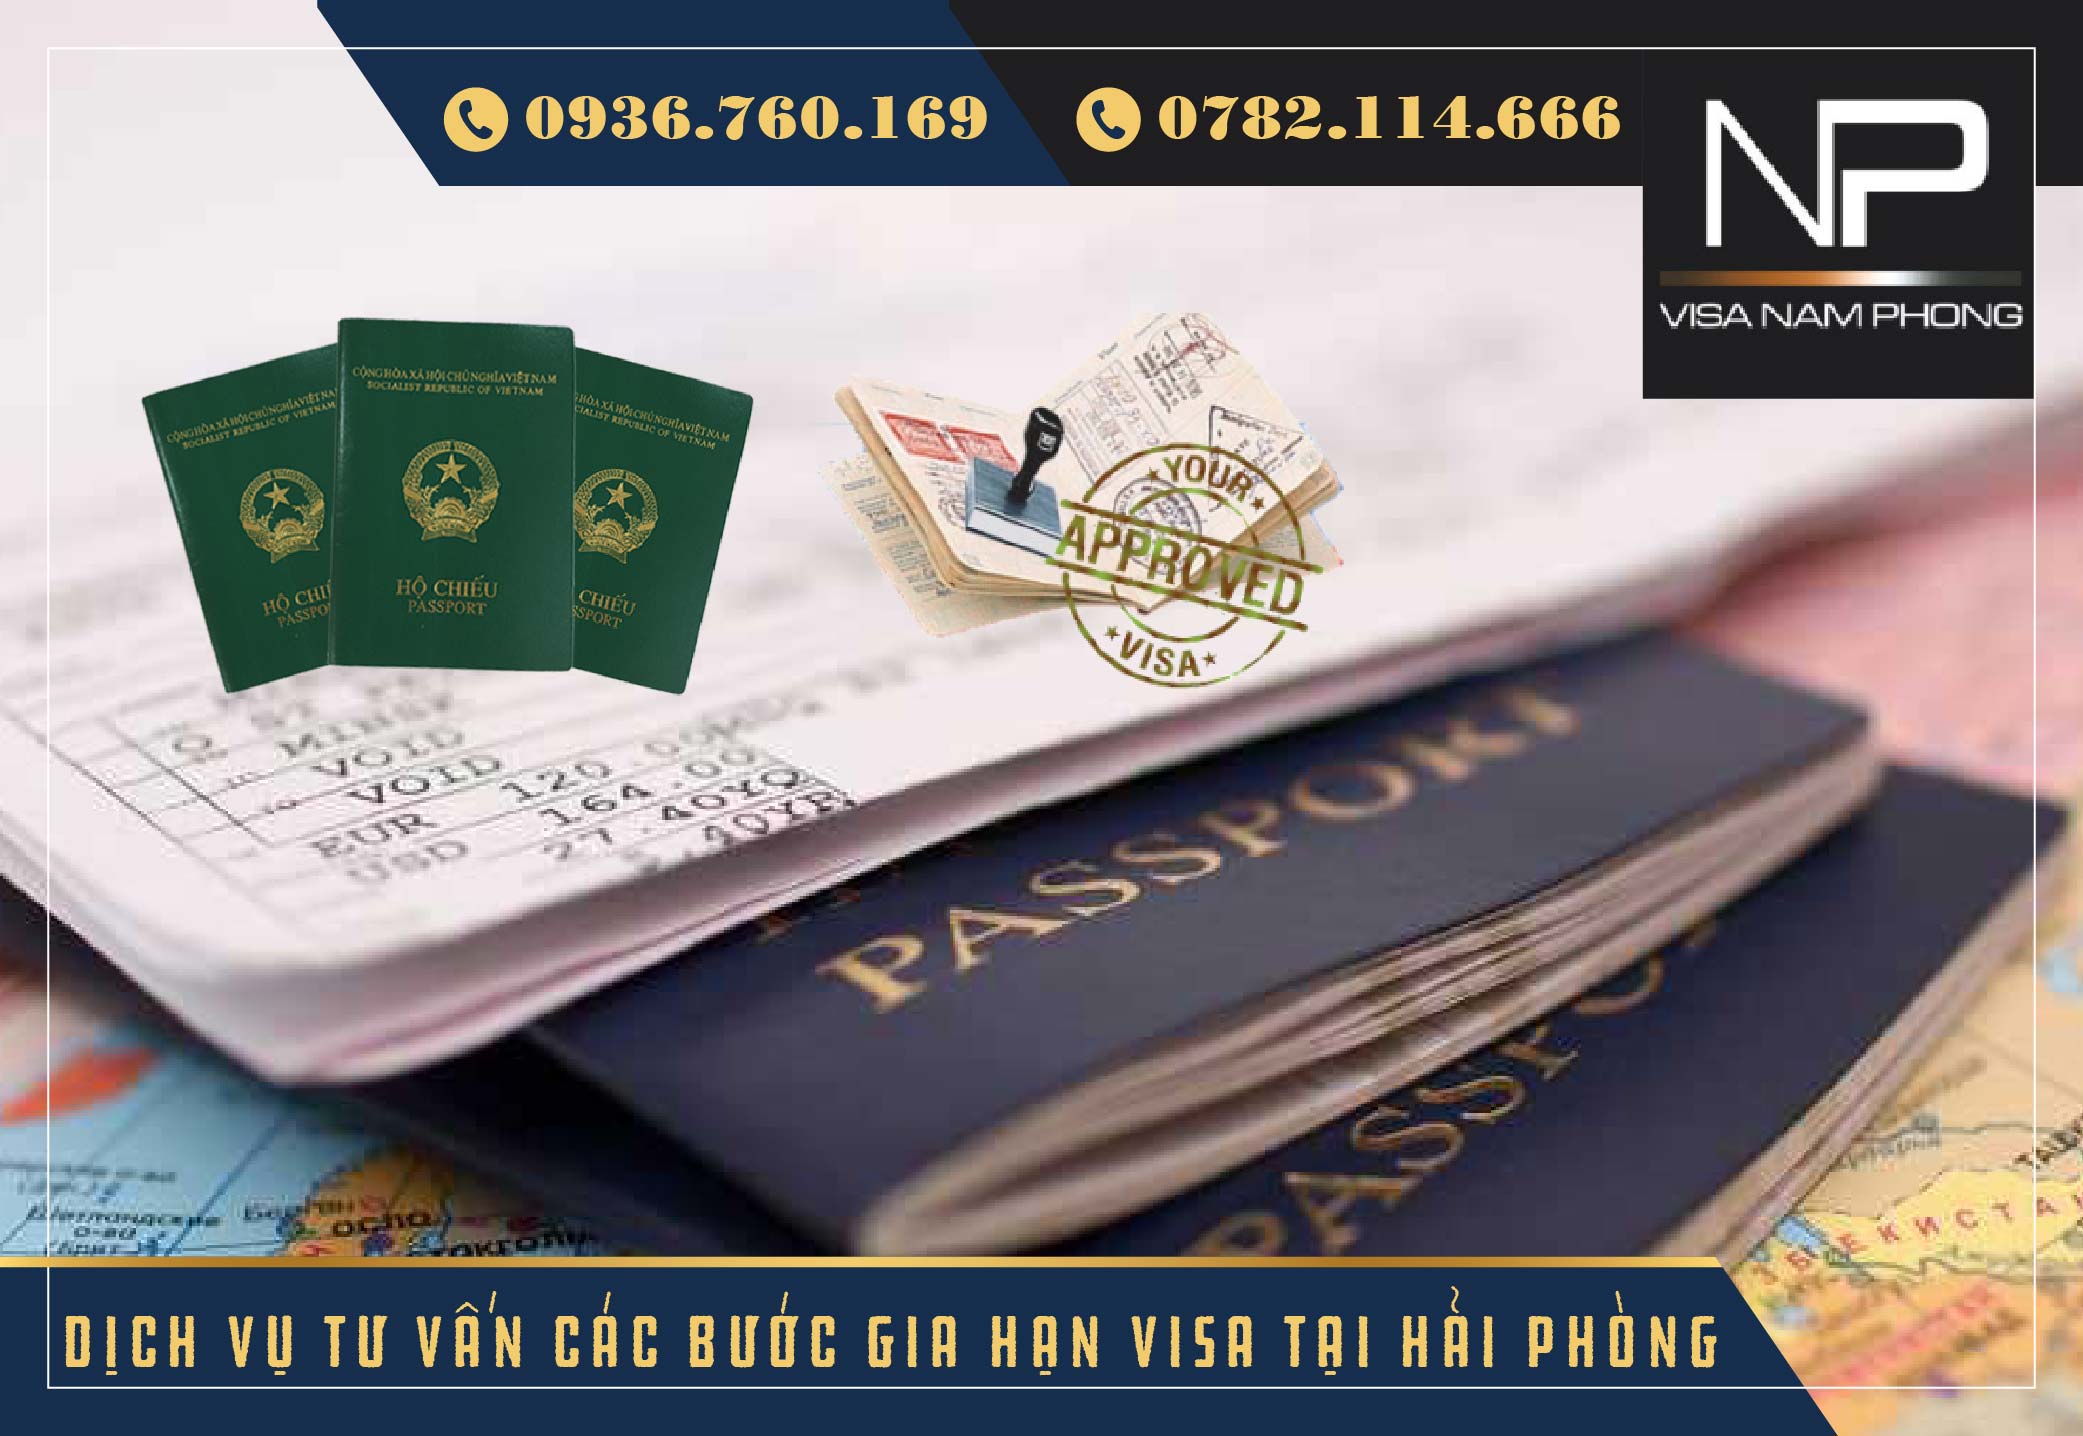 Dịch vụ tư vấn các bước gia hạn visa tại hải phòng